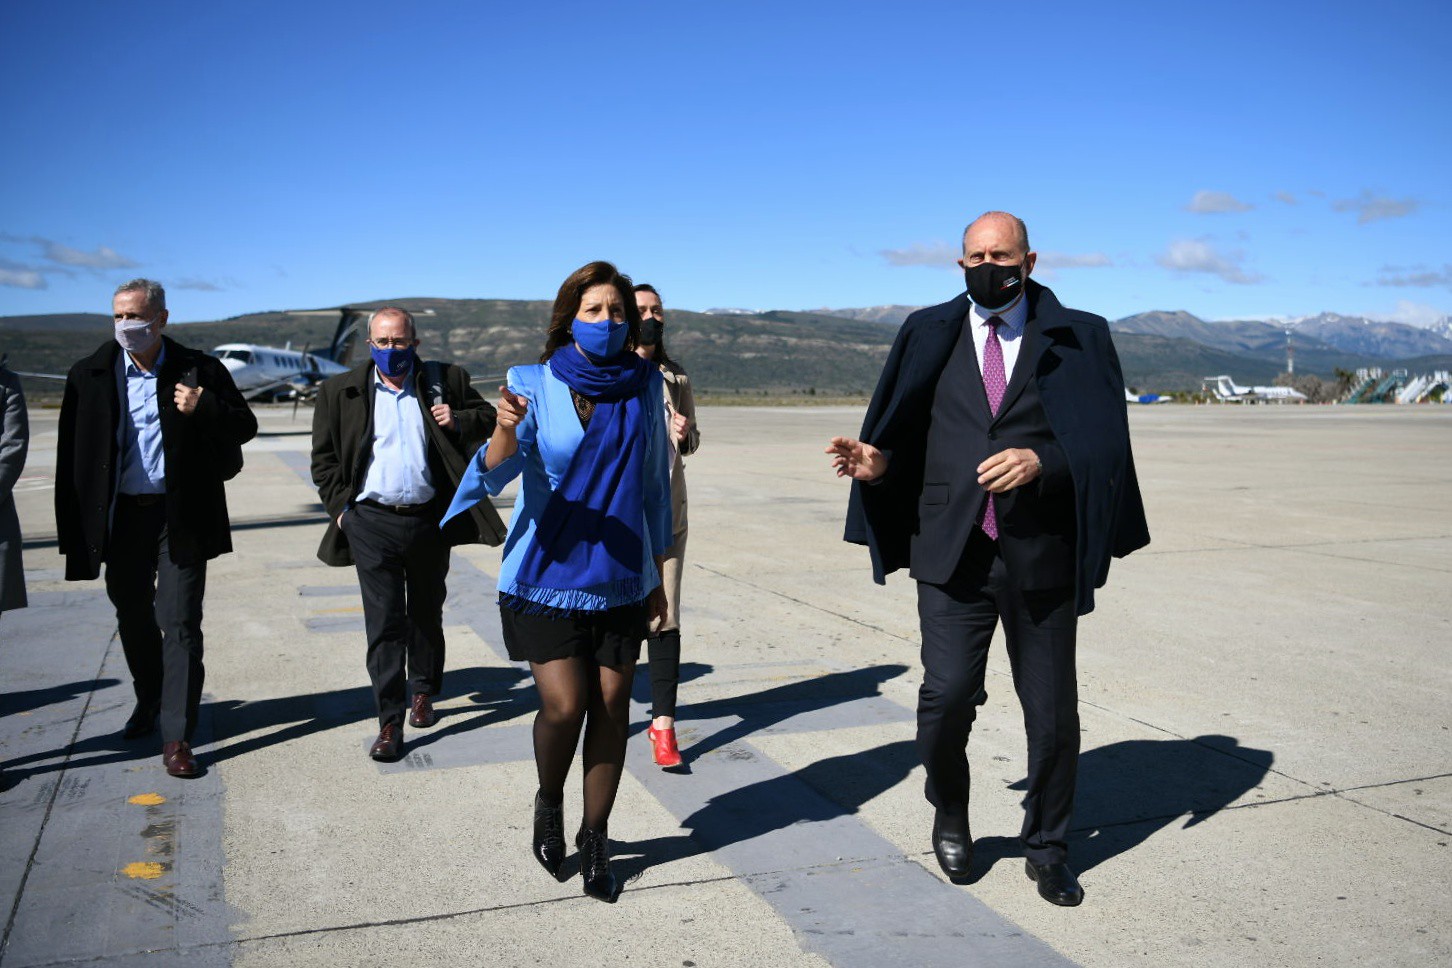 La gobernadora Arabela Carreras recibió a su par santafesino Omar Perotti en el aeropuerto de Bariloche. Foto: Gentileza